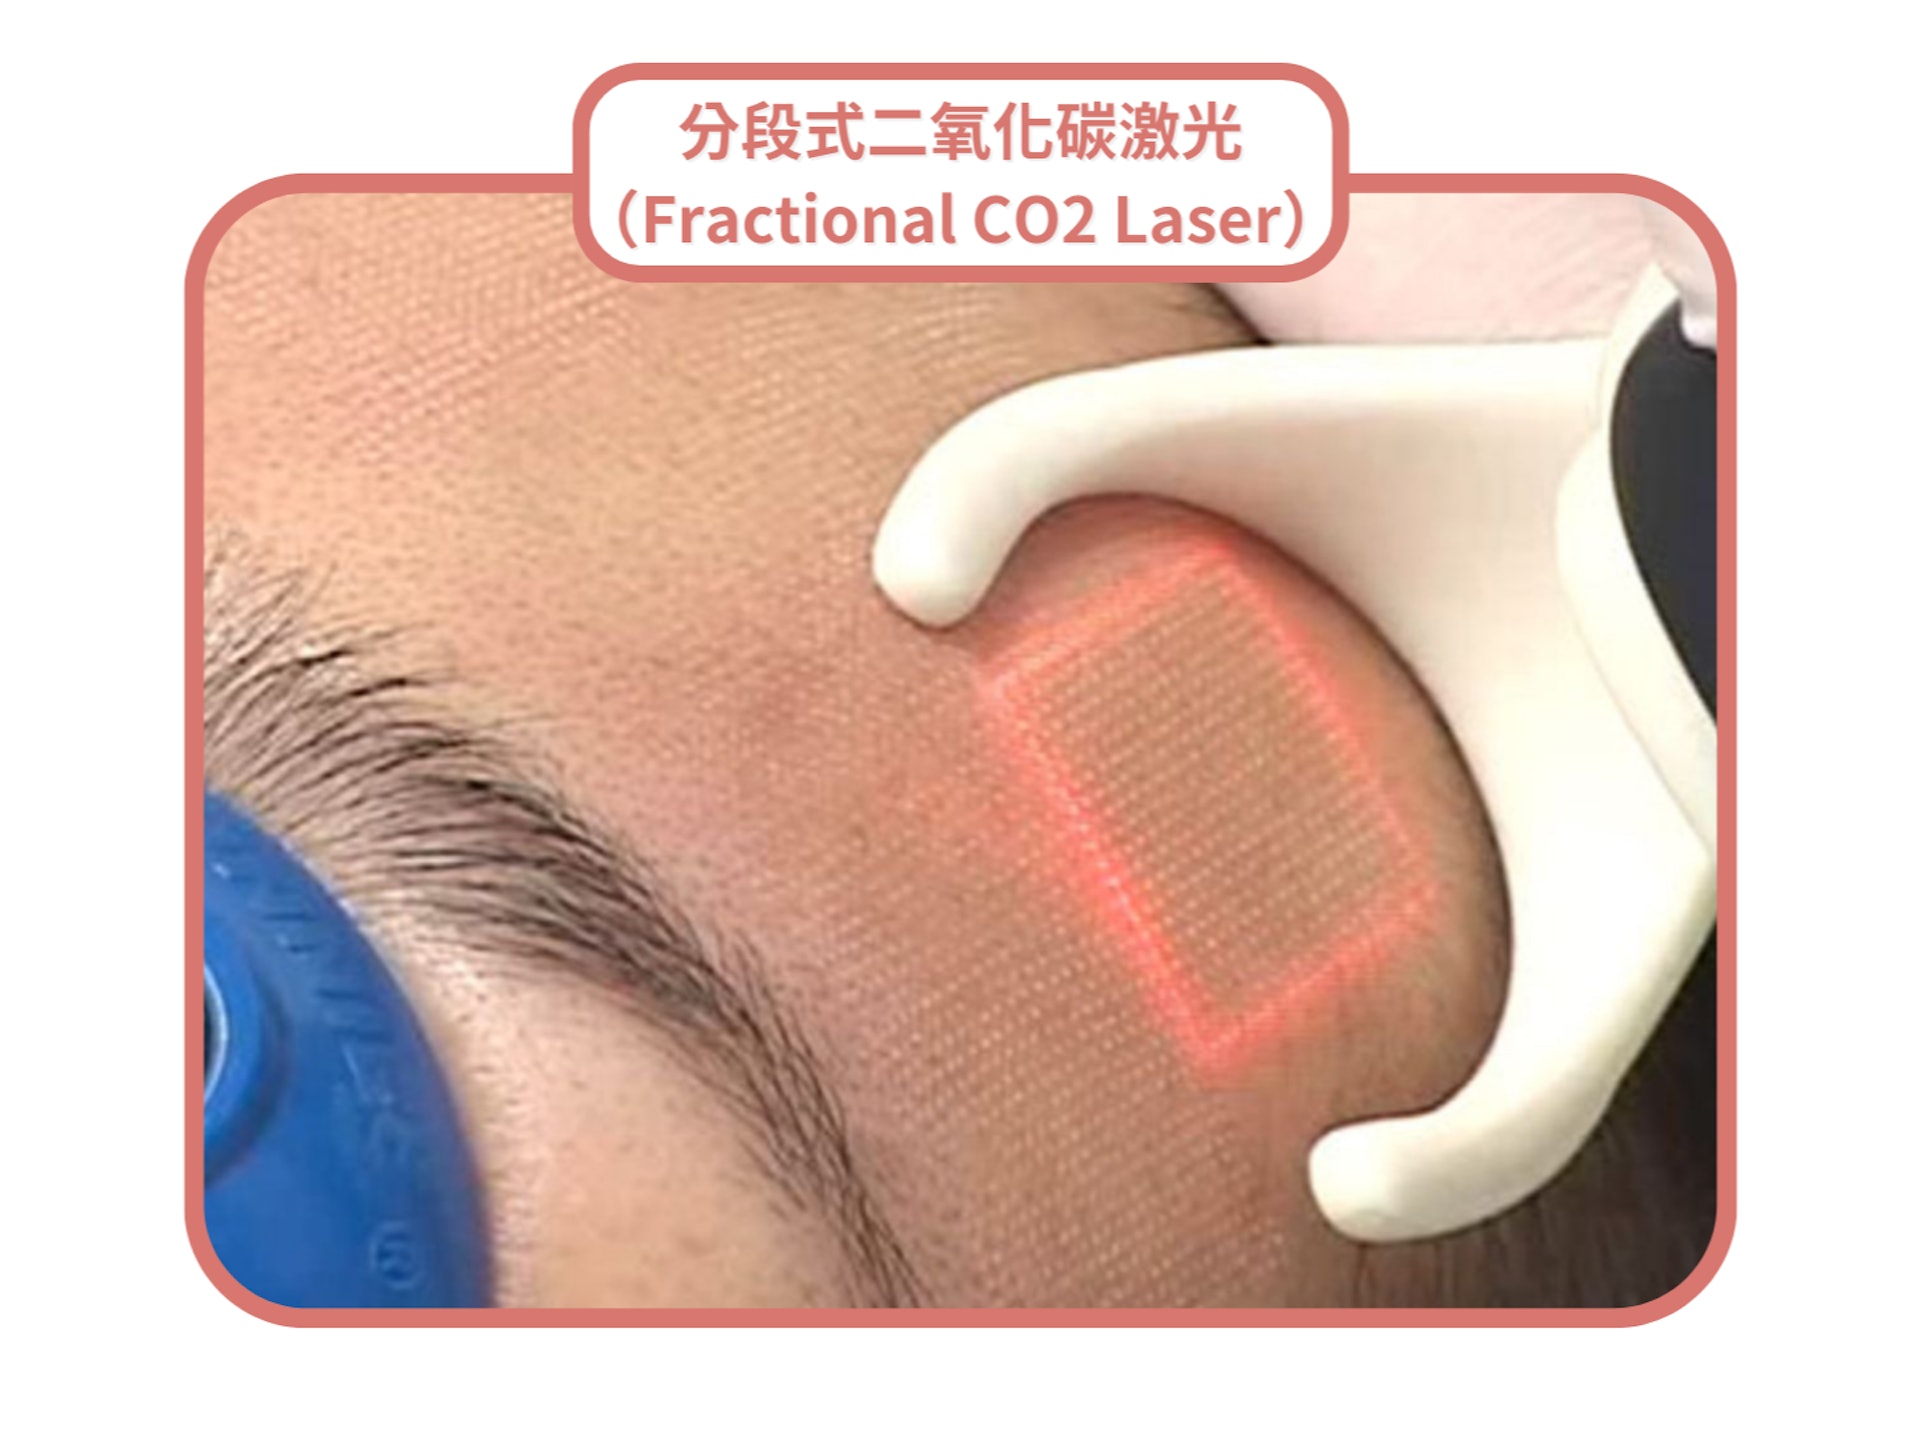 分段式二氧化碳激光（Fractional CO2 Laser）會以點陣式輸出能量於皮膚上，形成規律排列的微小細孔。（圖片：Shutterstock）